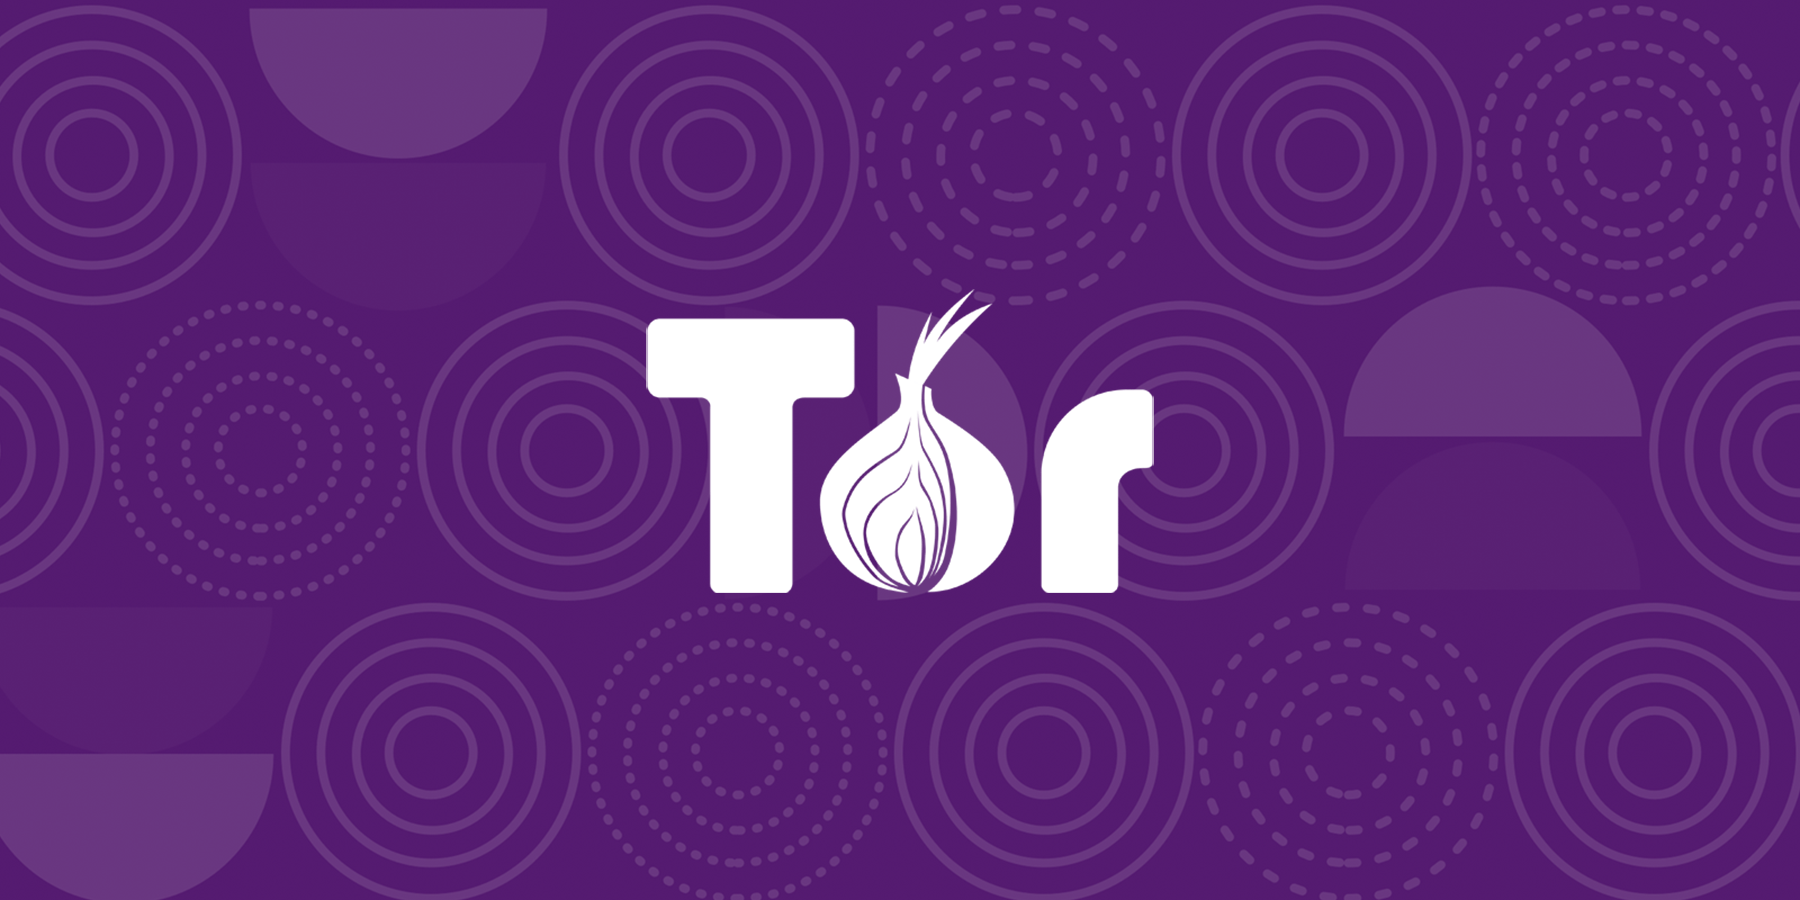 Trình duyệt Tor là một trong những cách để ẩn địa chỉ IP